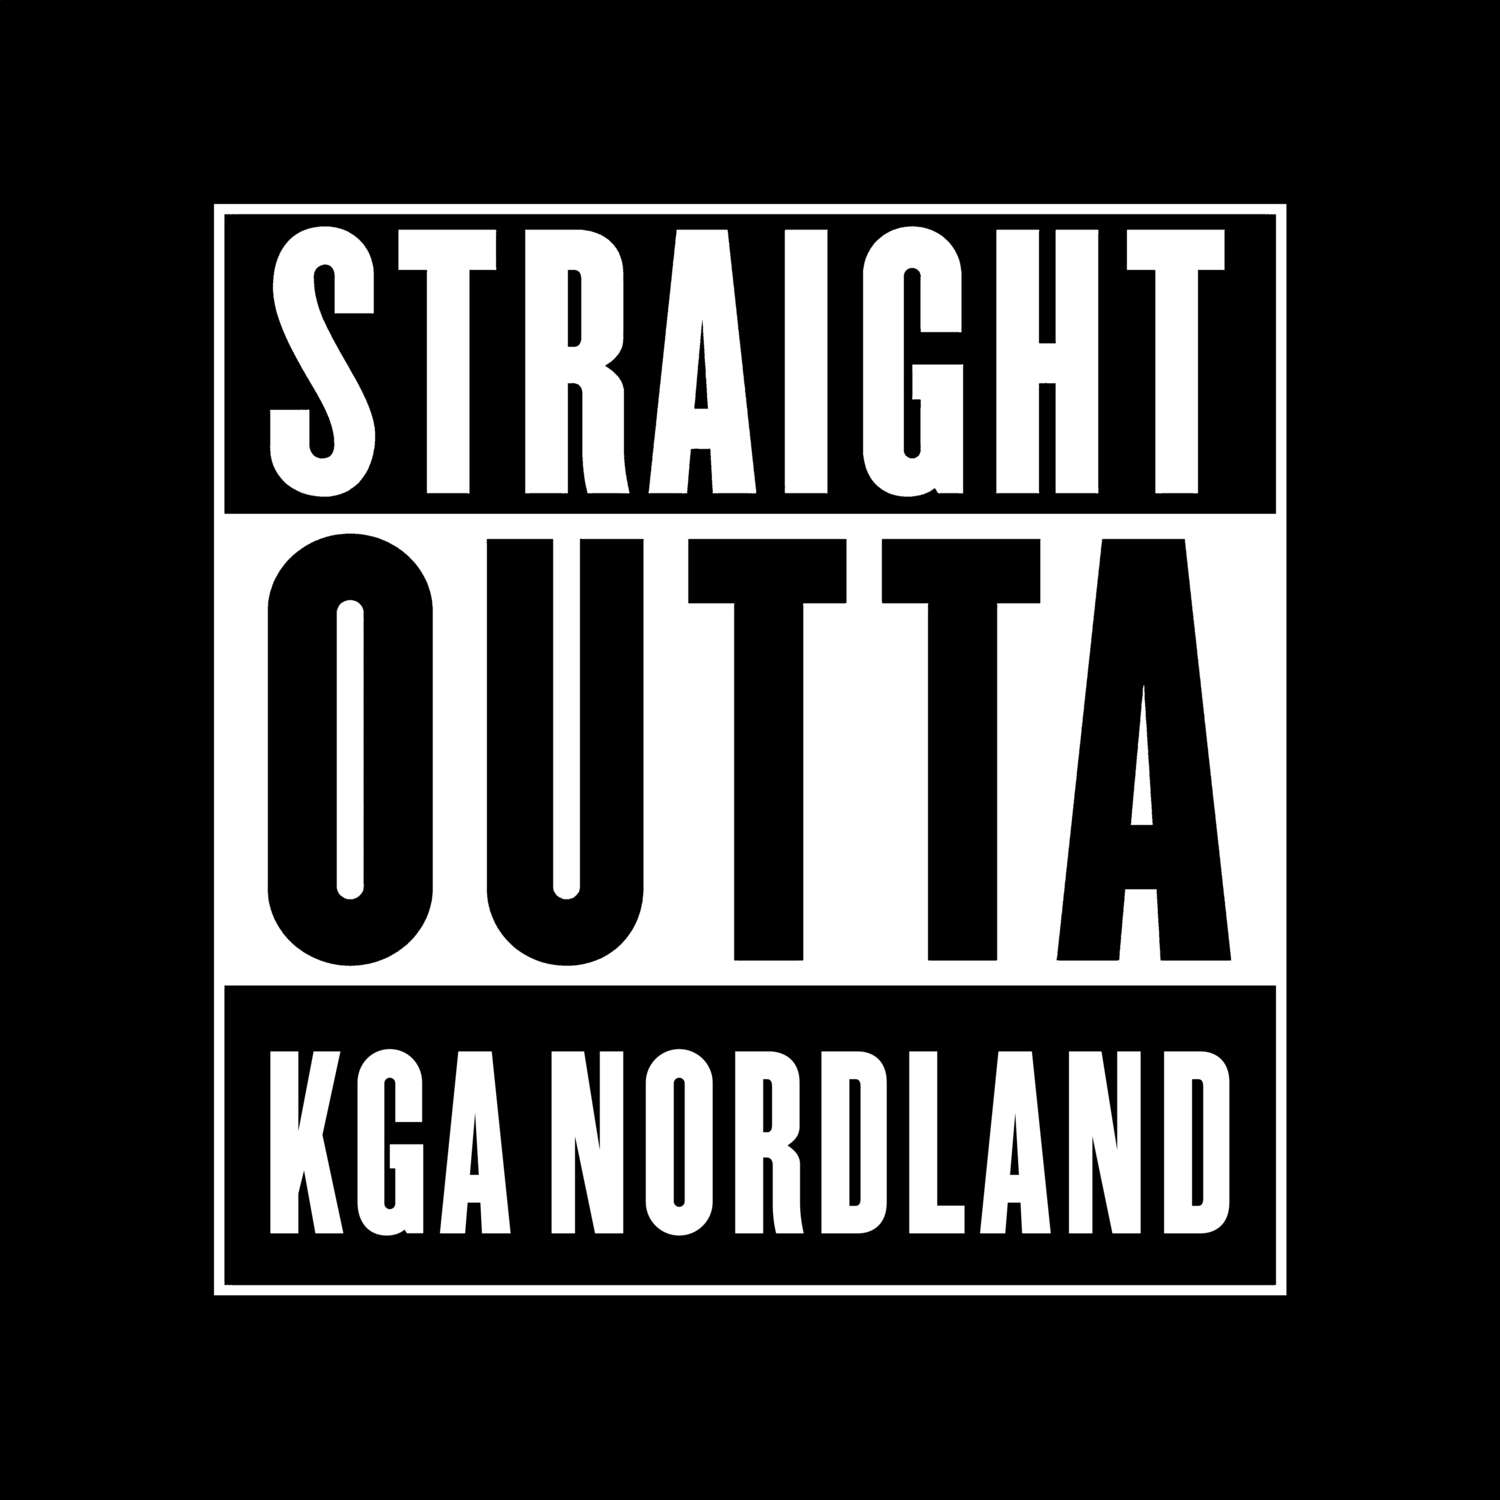 KGA Nordland T-Shirt »Straight Outta«